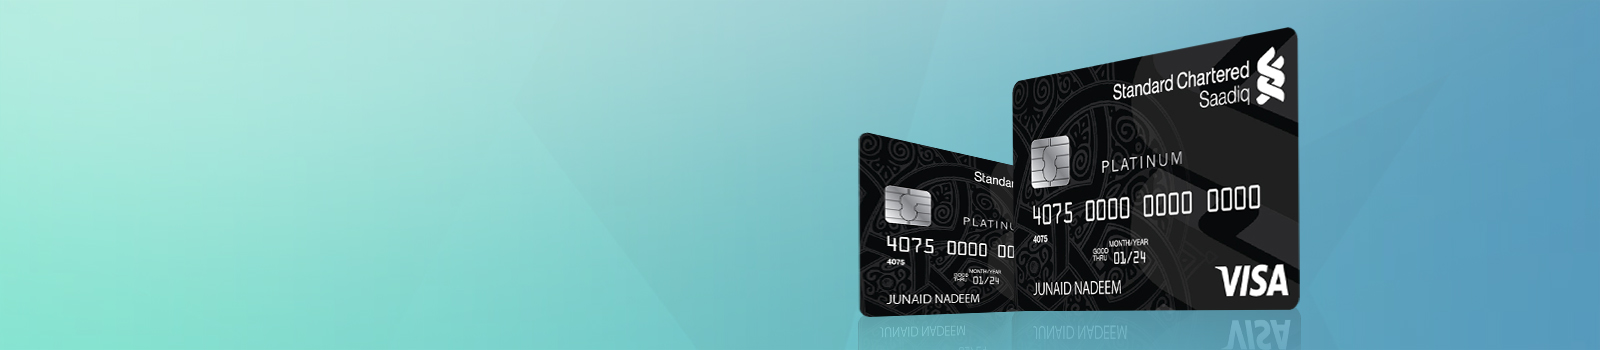 Saadiq Platinum Credit Card